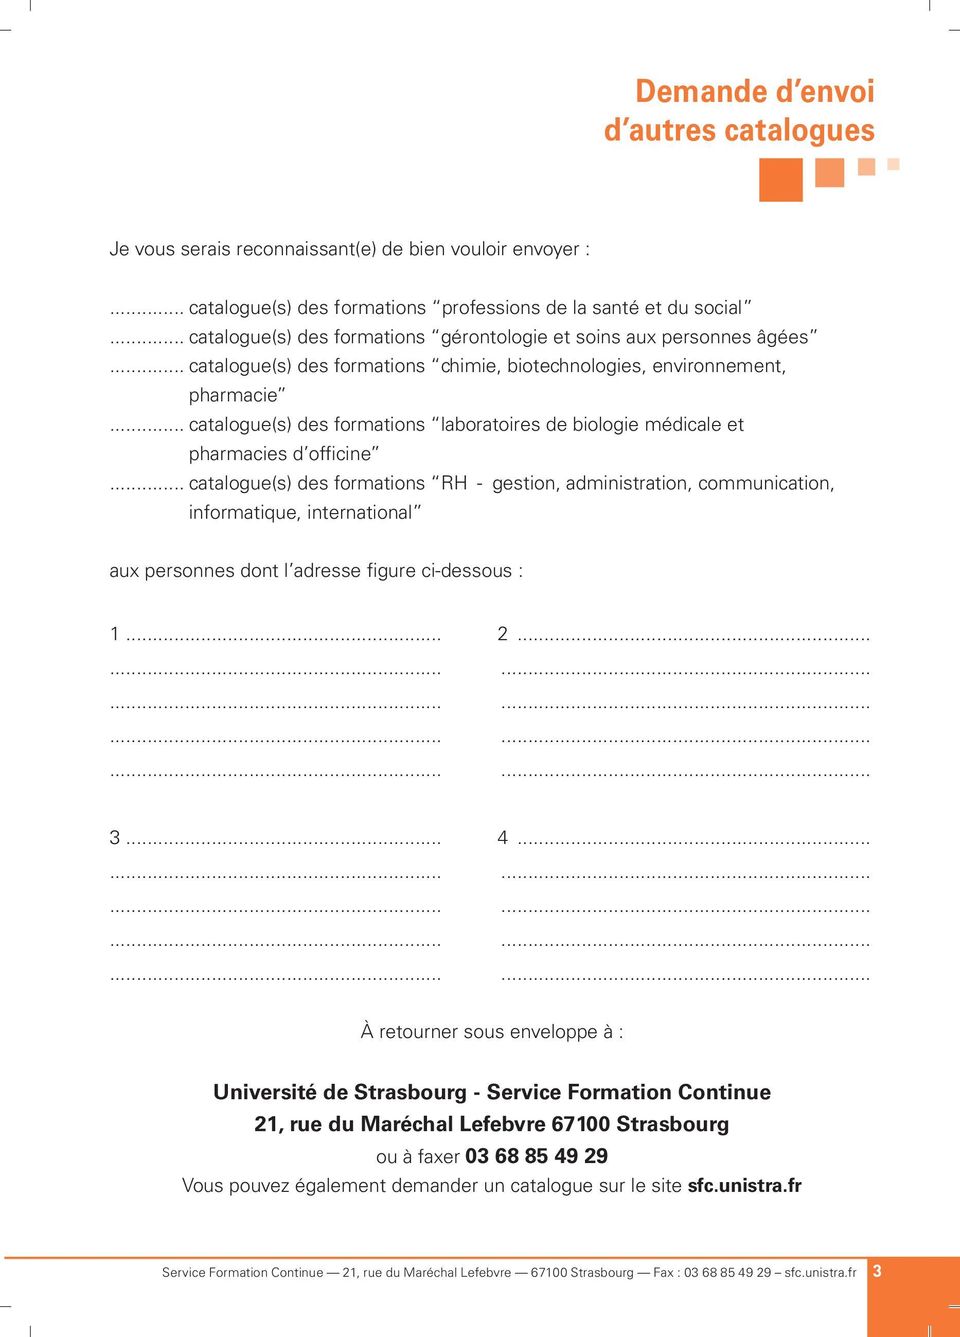 .. catalogue(s) des formations laboratoires de biologie médicale et pharmacies d officine.